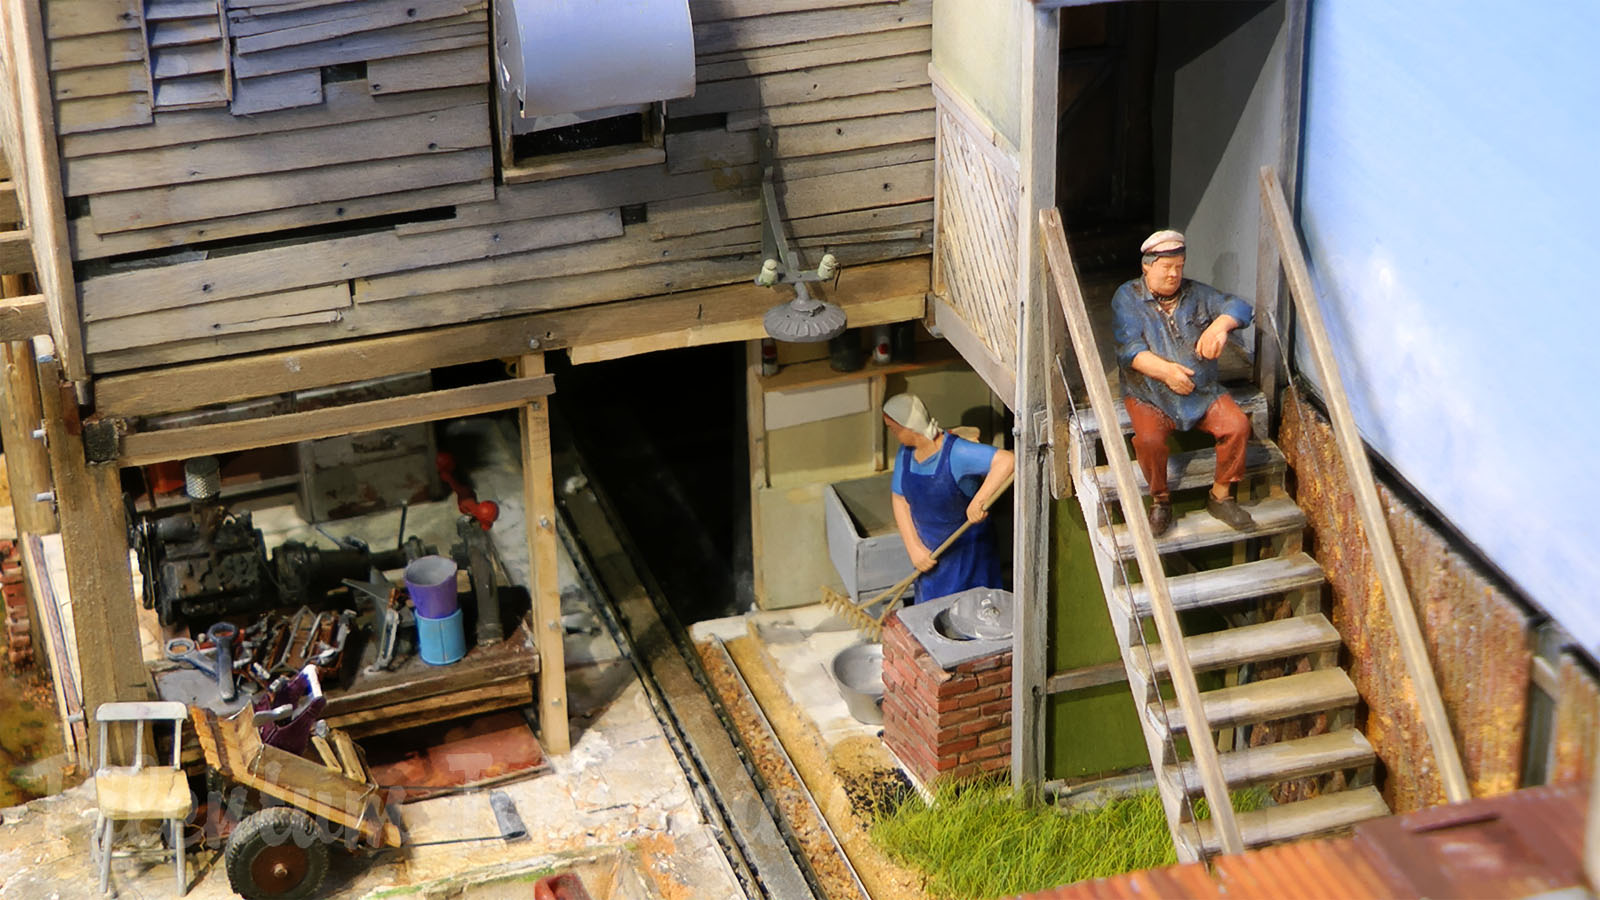 Bellissimo diorama ferroviario australiano realizzato da Kim Marsh